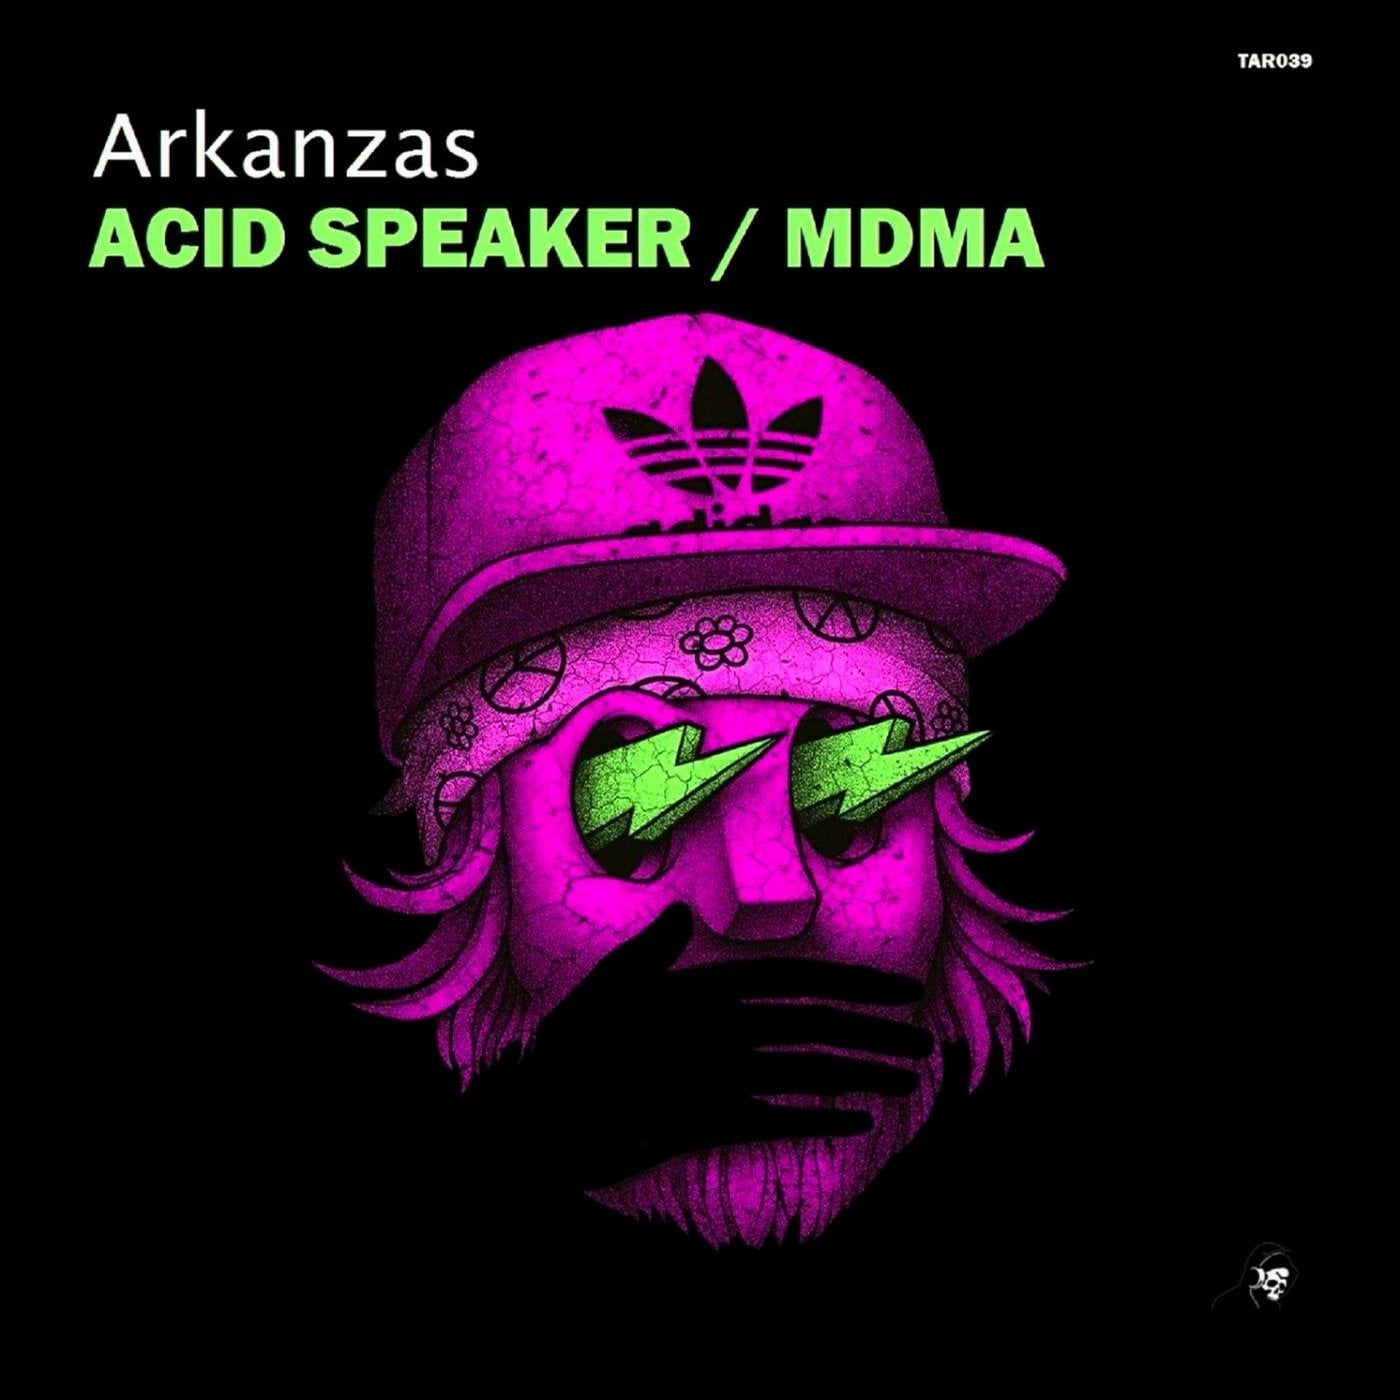 Acid Speaker / MDMA